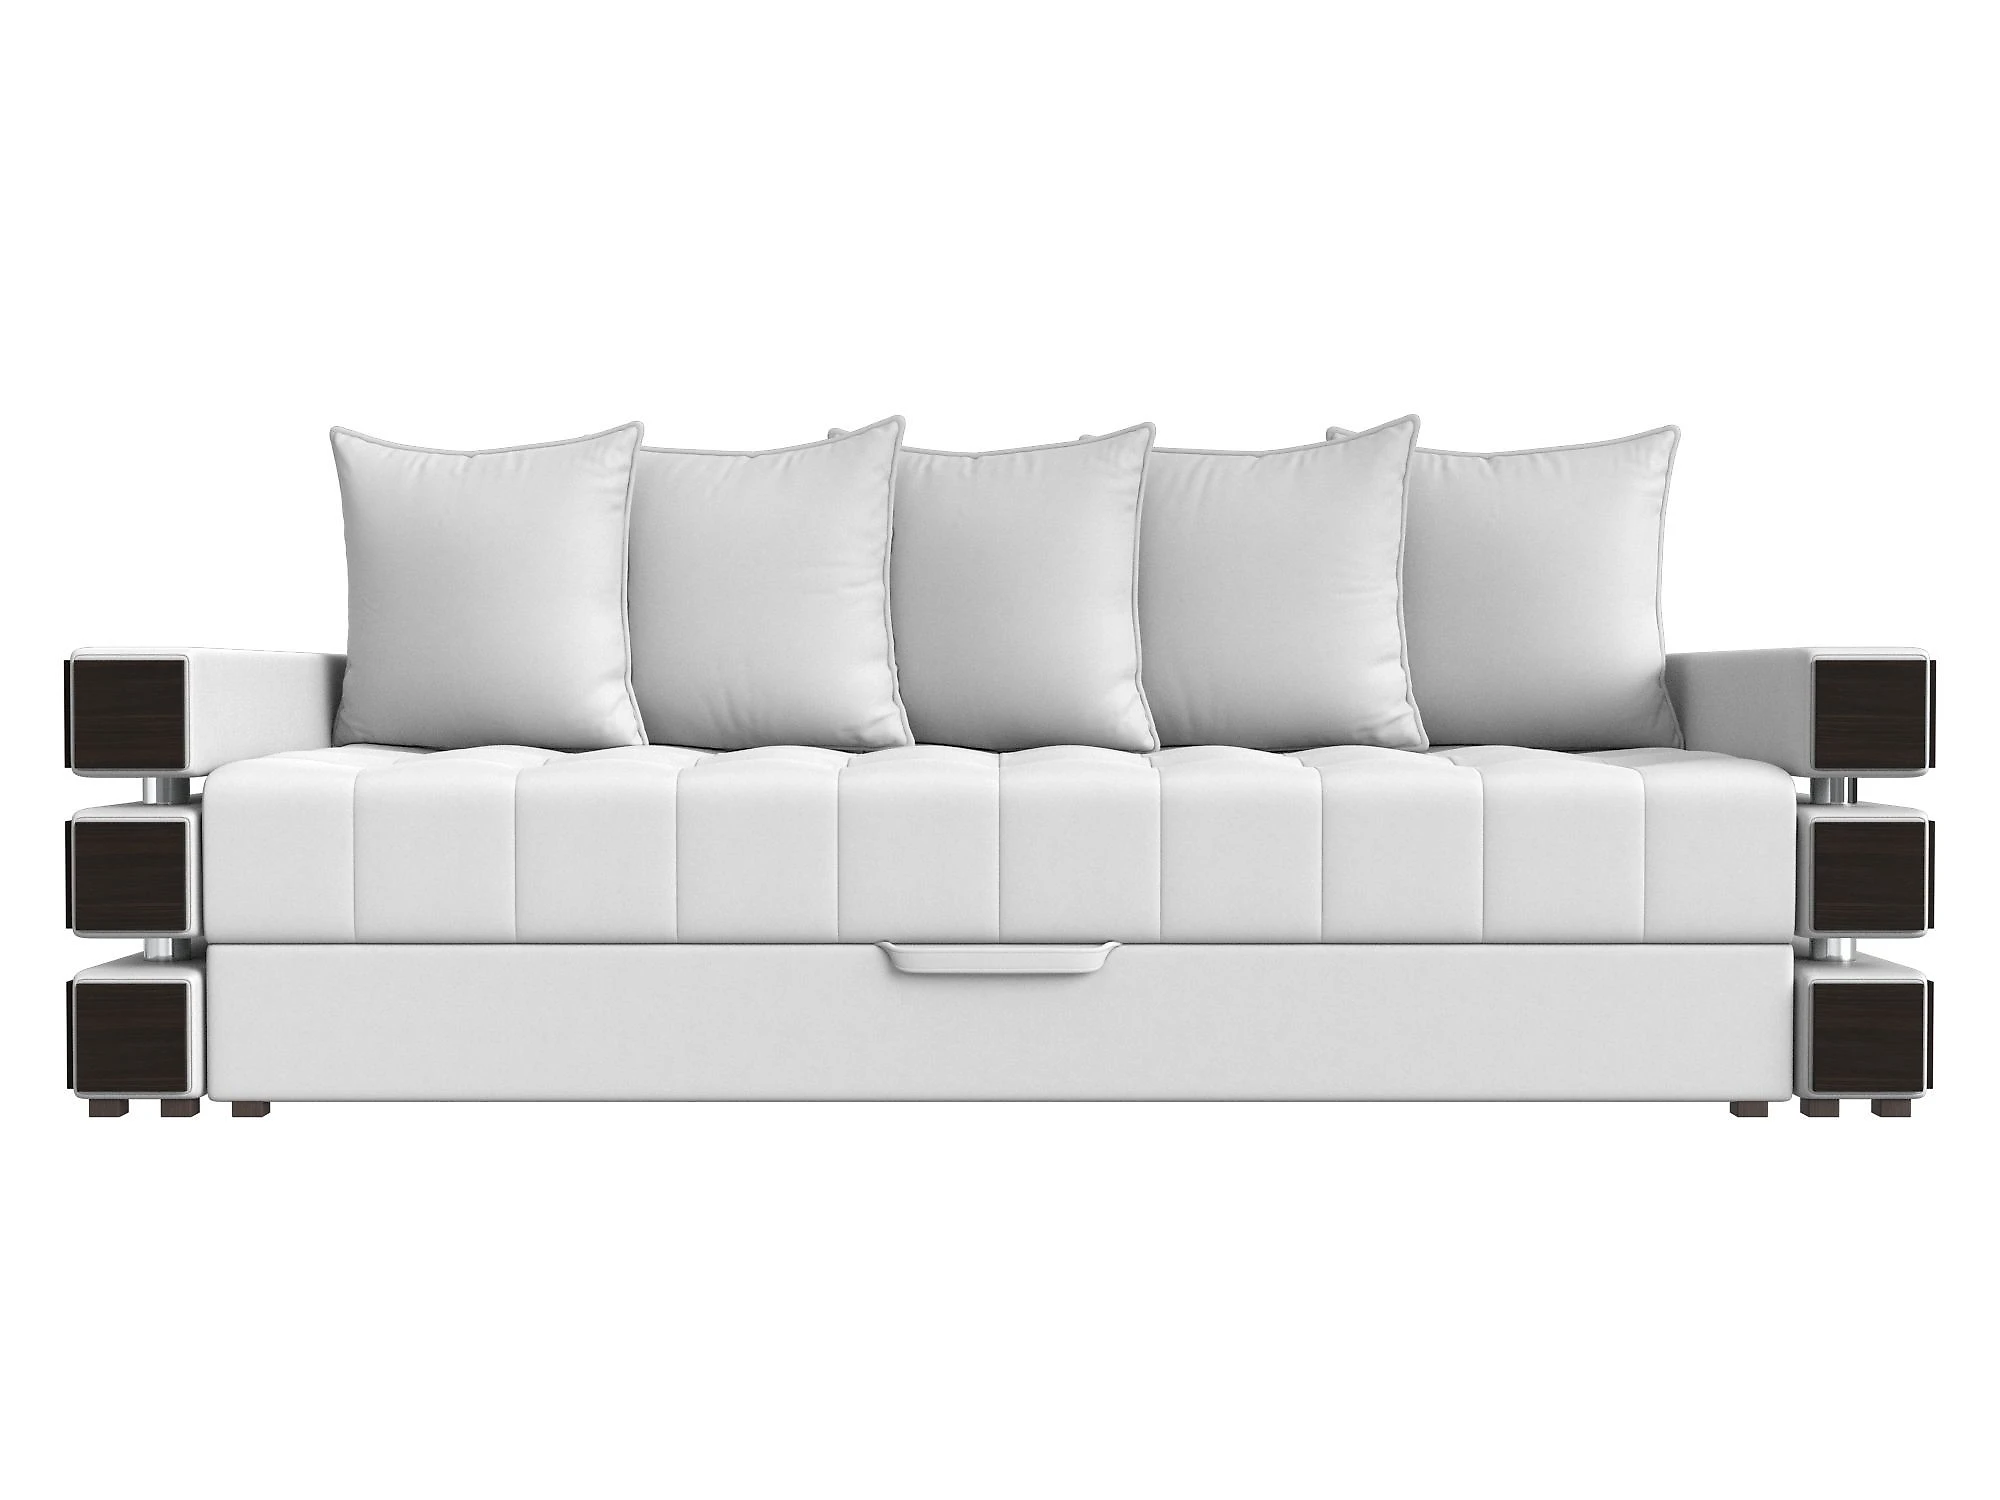  кожаный диван еврокнижка Венеция Дизайн 39